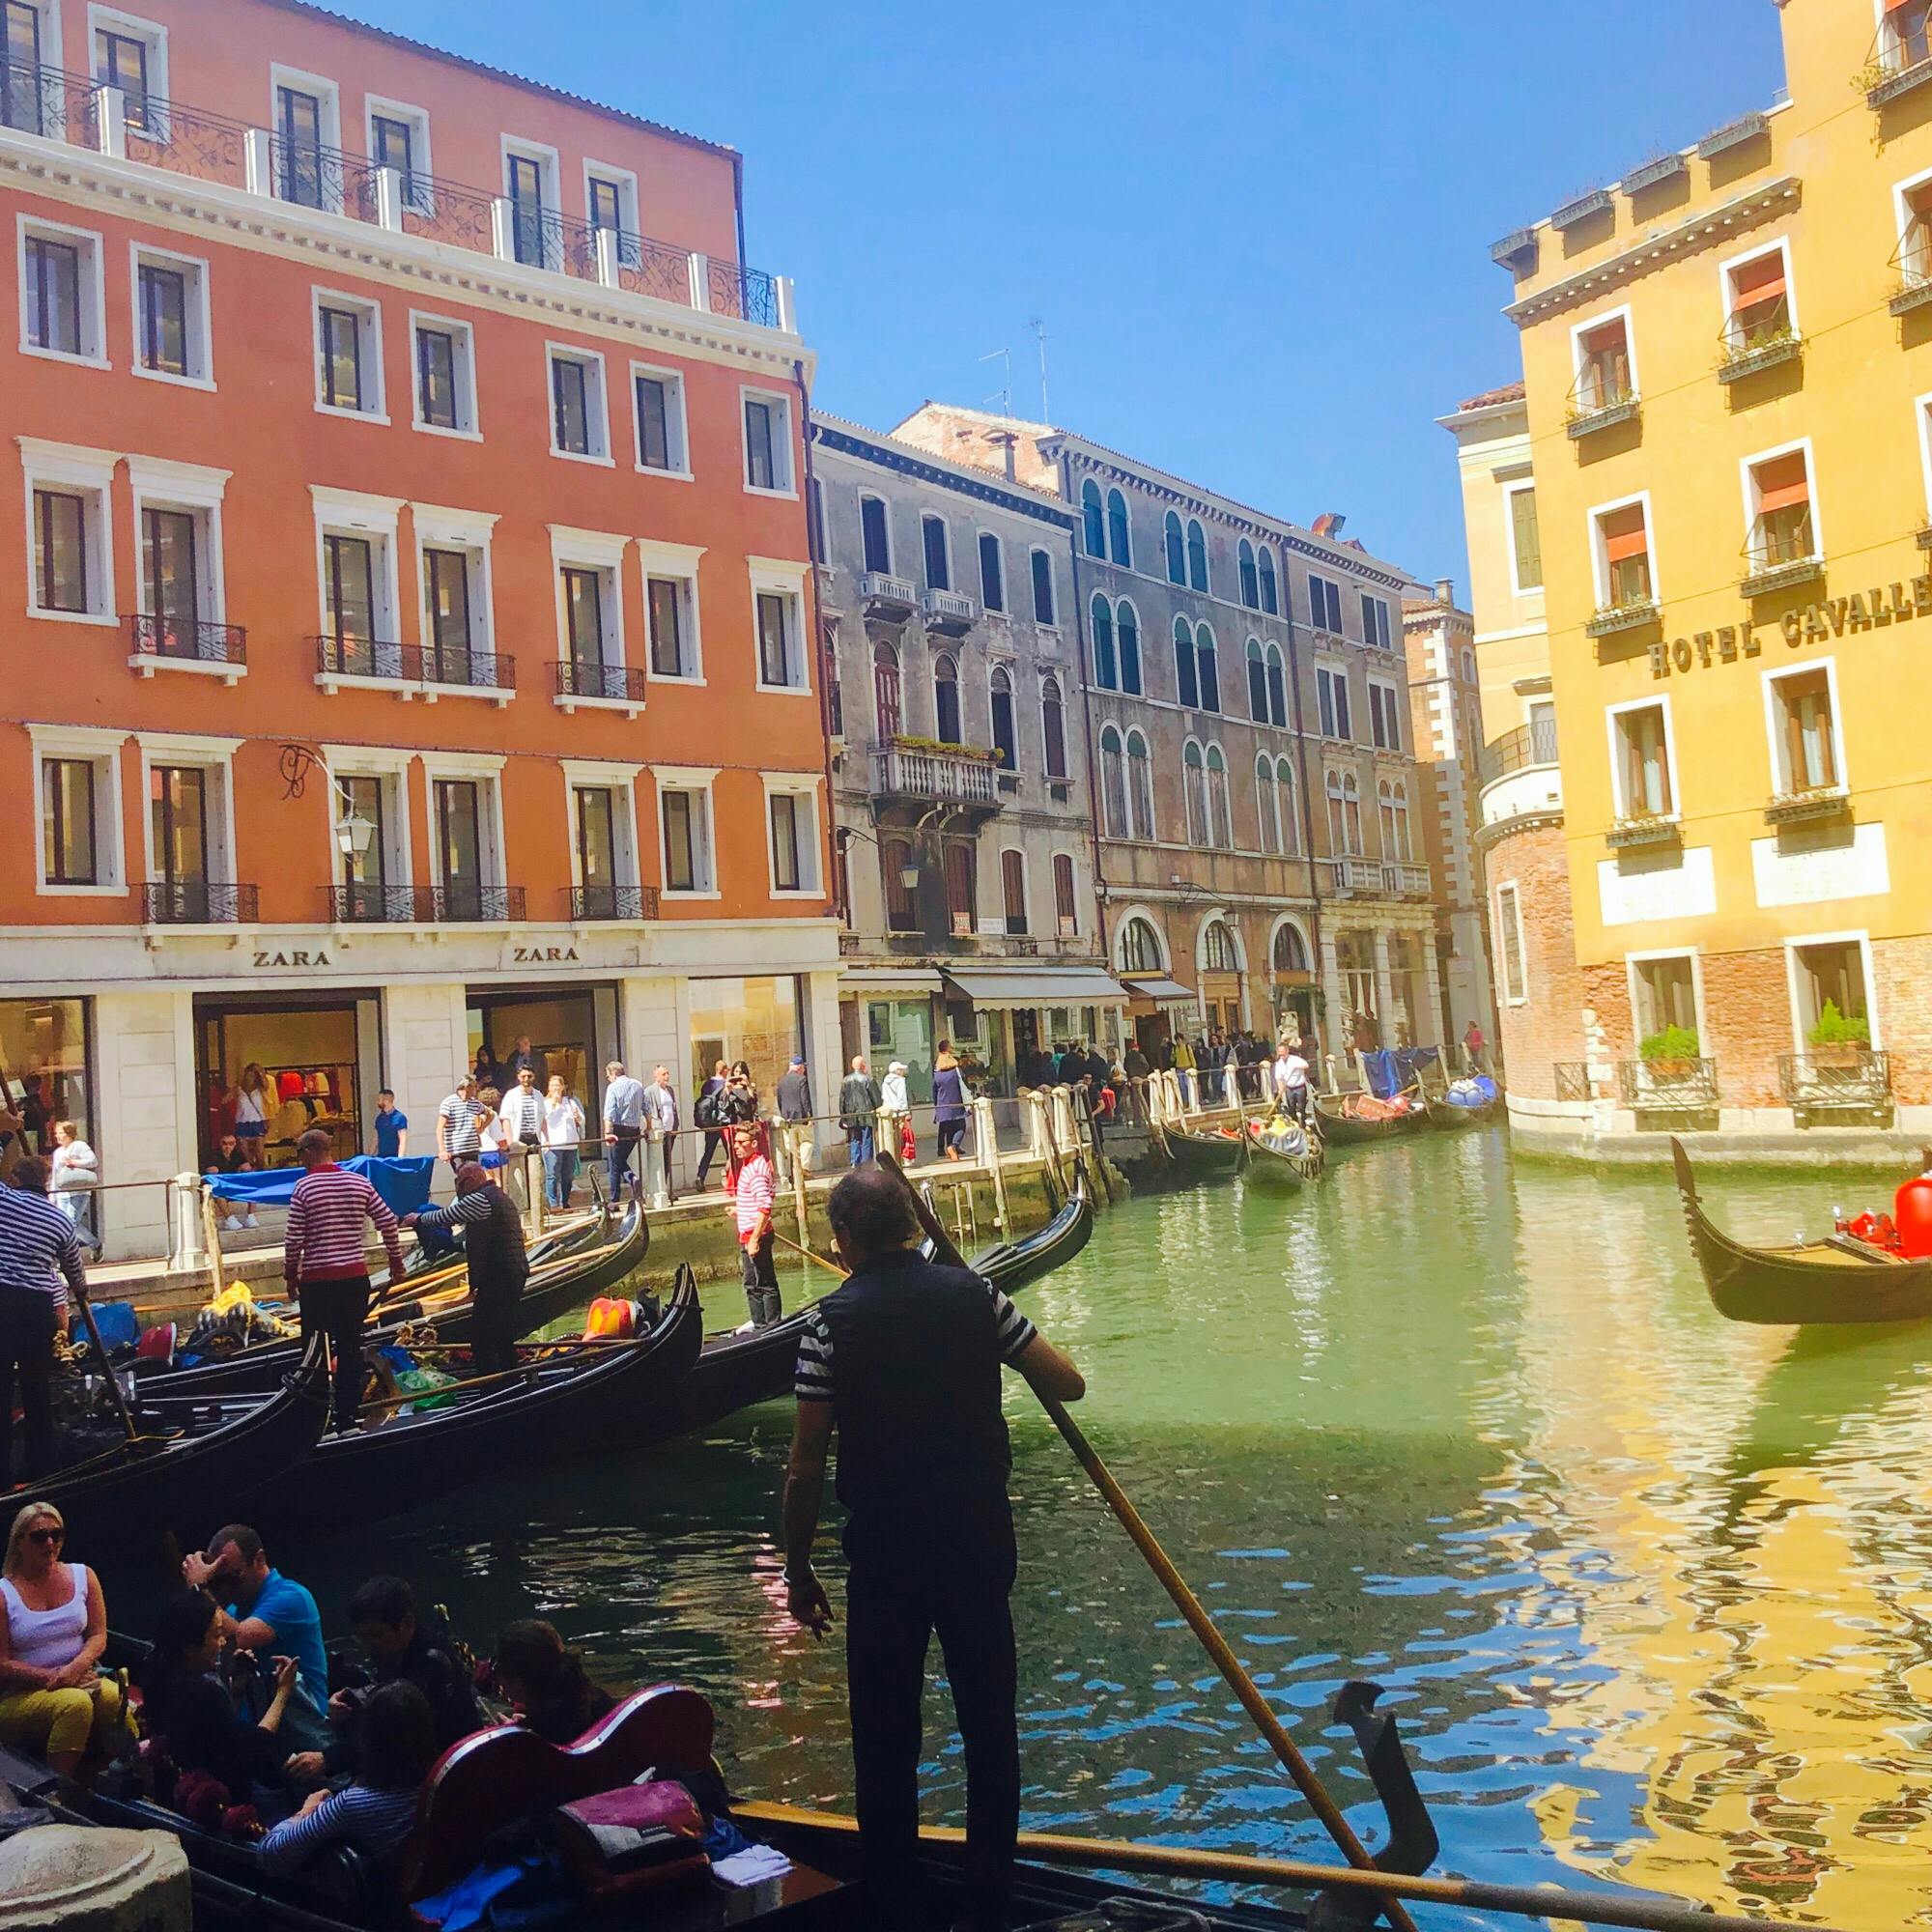 ヴェネツィア Venezia ベネチア の投稿写真 感想 みどころ イタリア ヴェネツィア 水の都 トリップノート